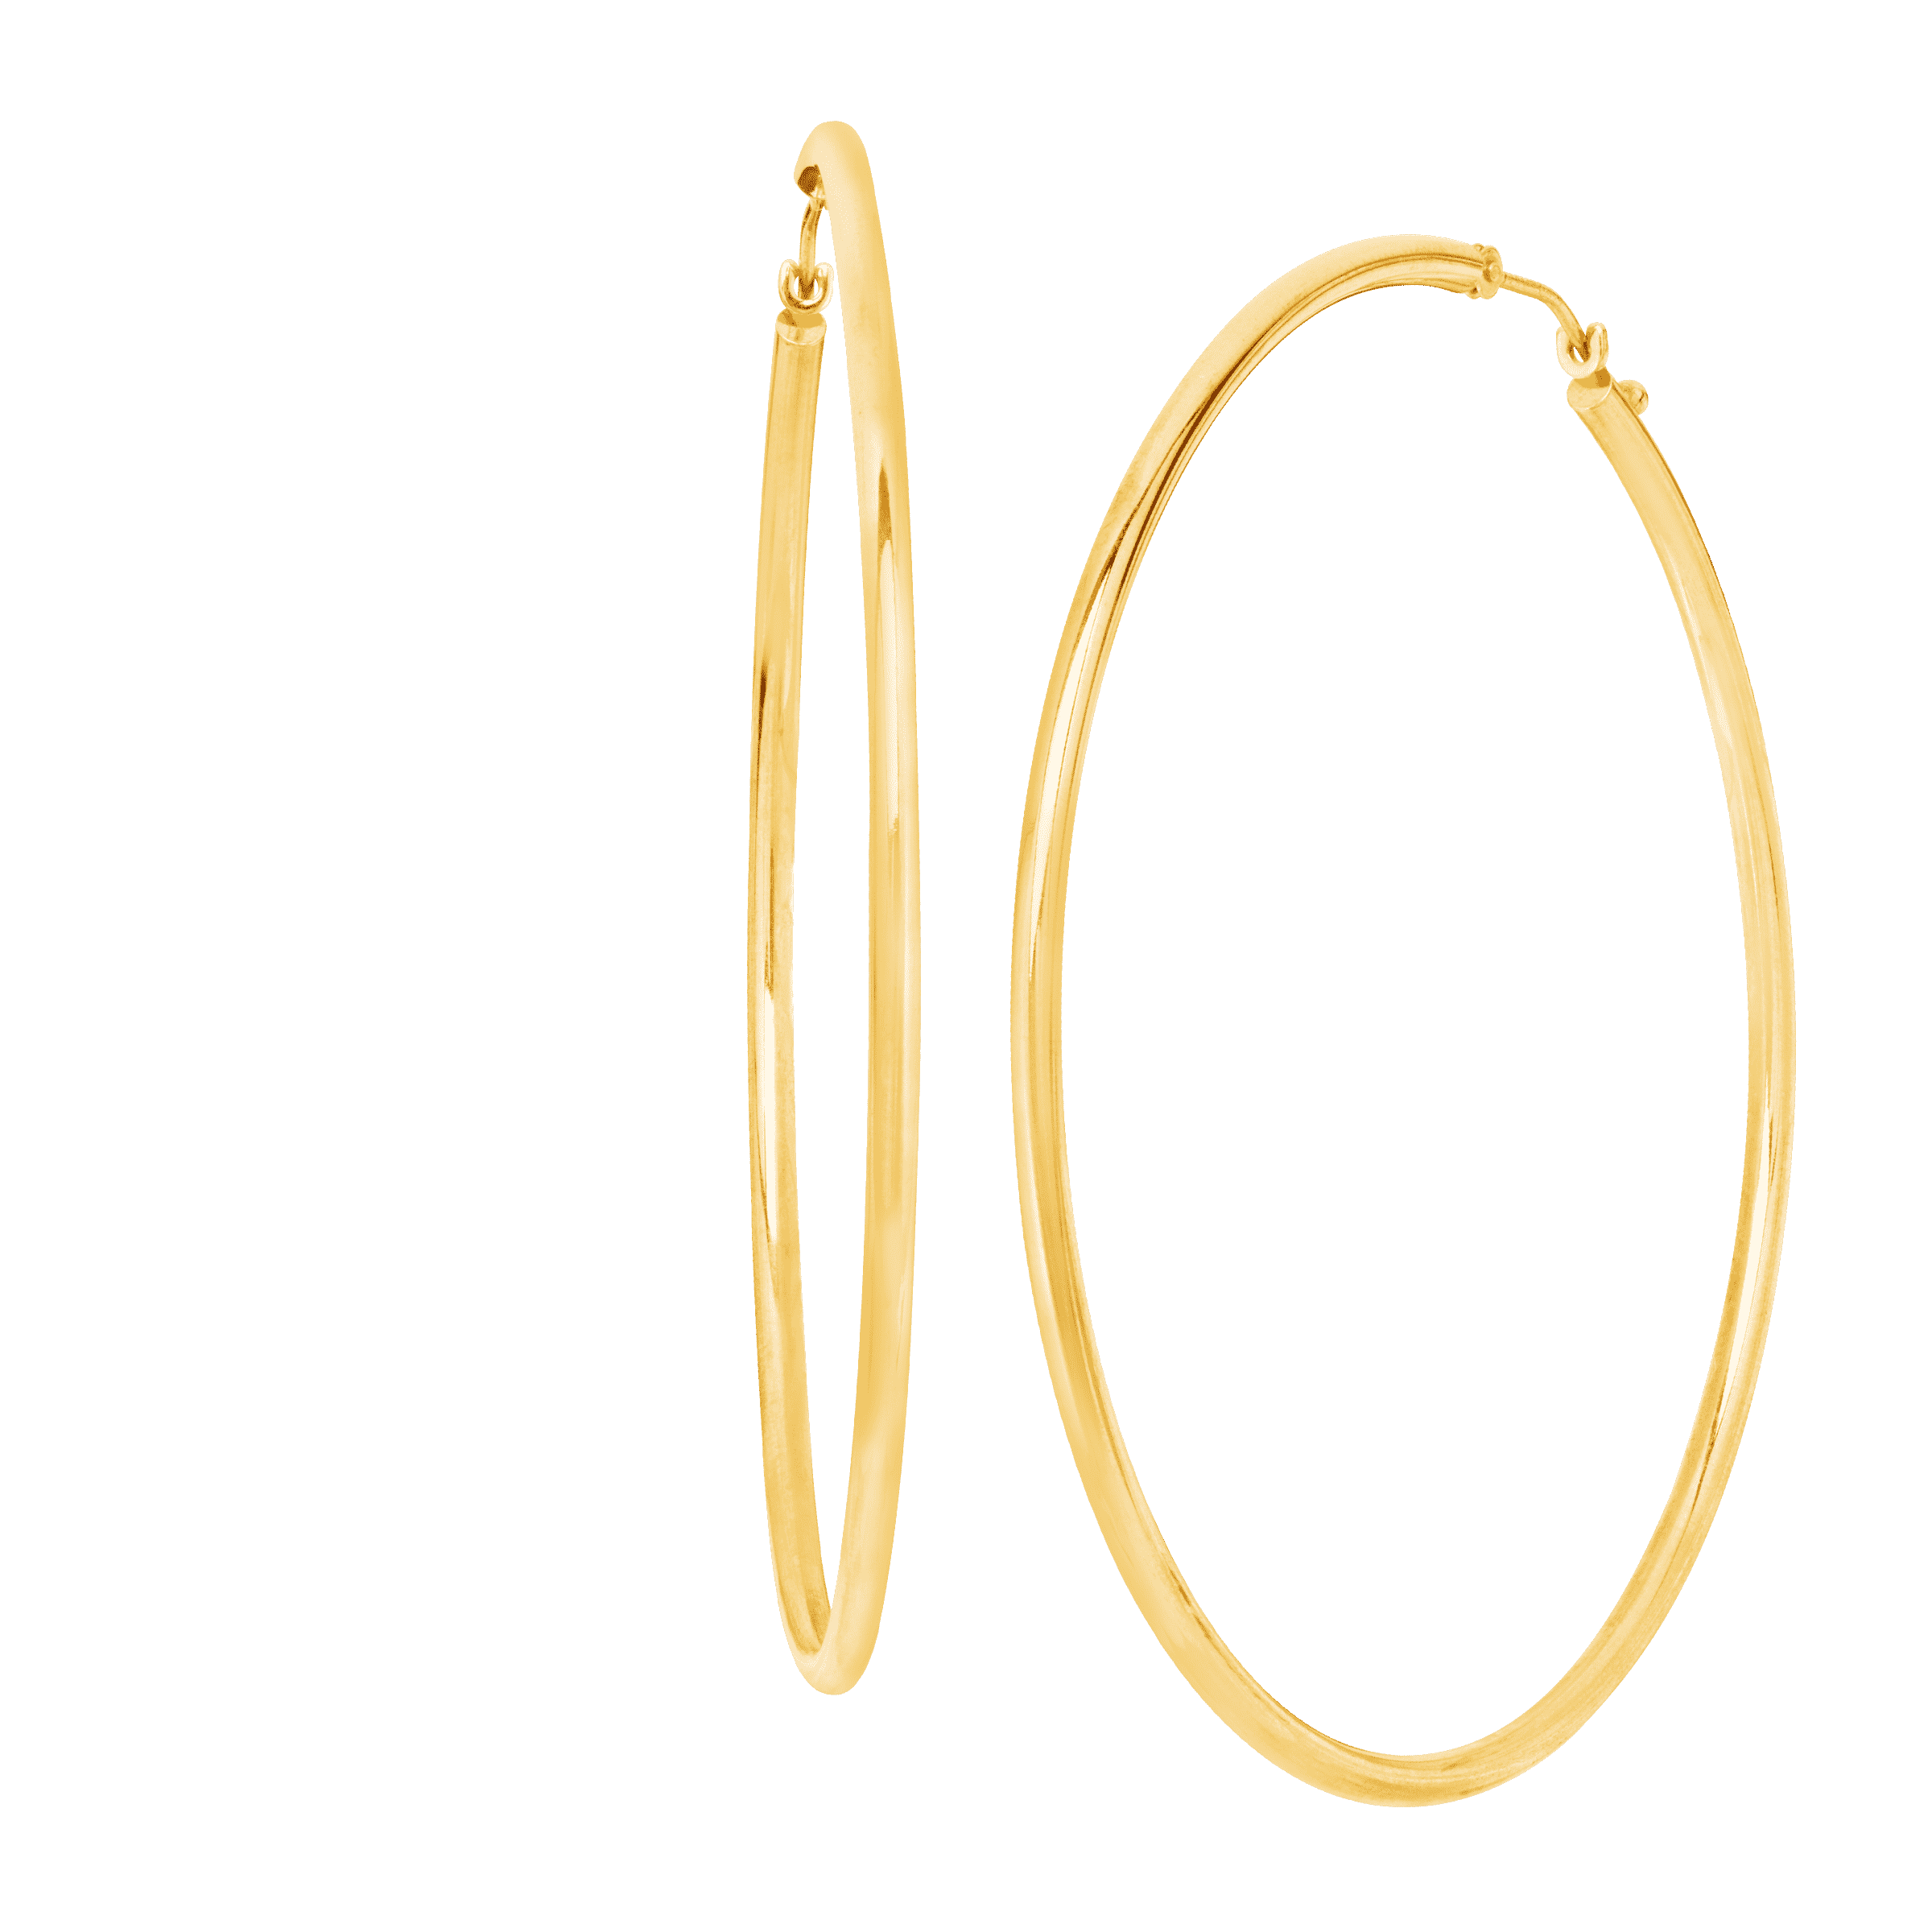 Gold Silver Color Hoop Earrings 10MM-70MM Big Smooth Circle Earrings  Stainless Steel Loop Earrings for Women Men | Shopee Singapore